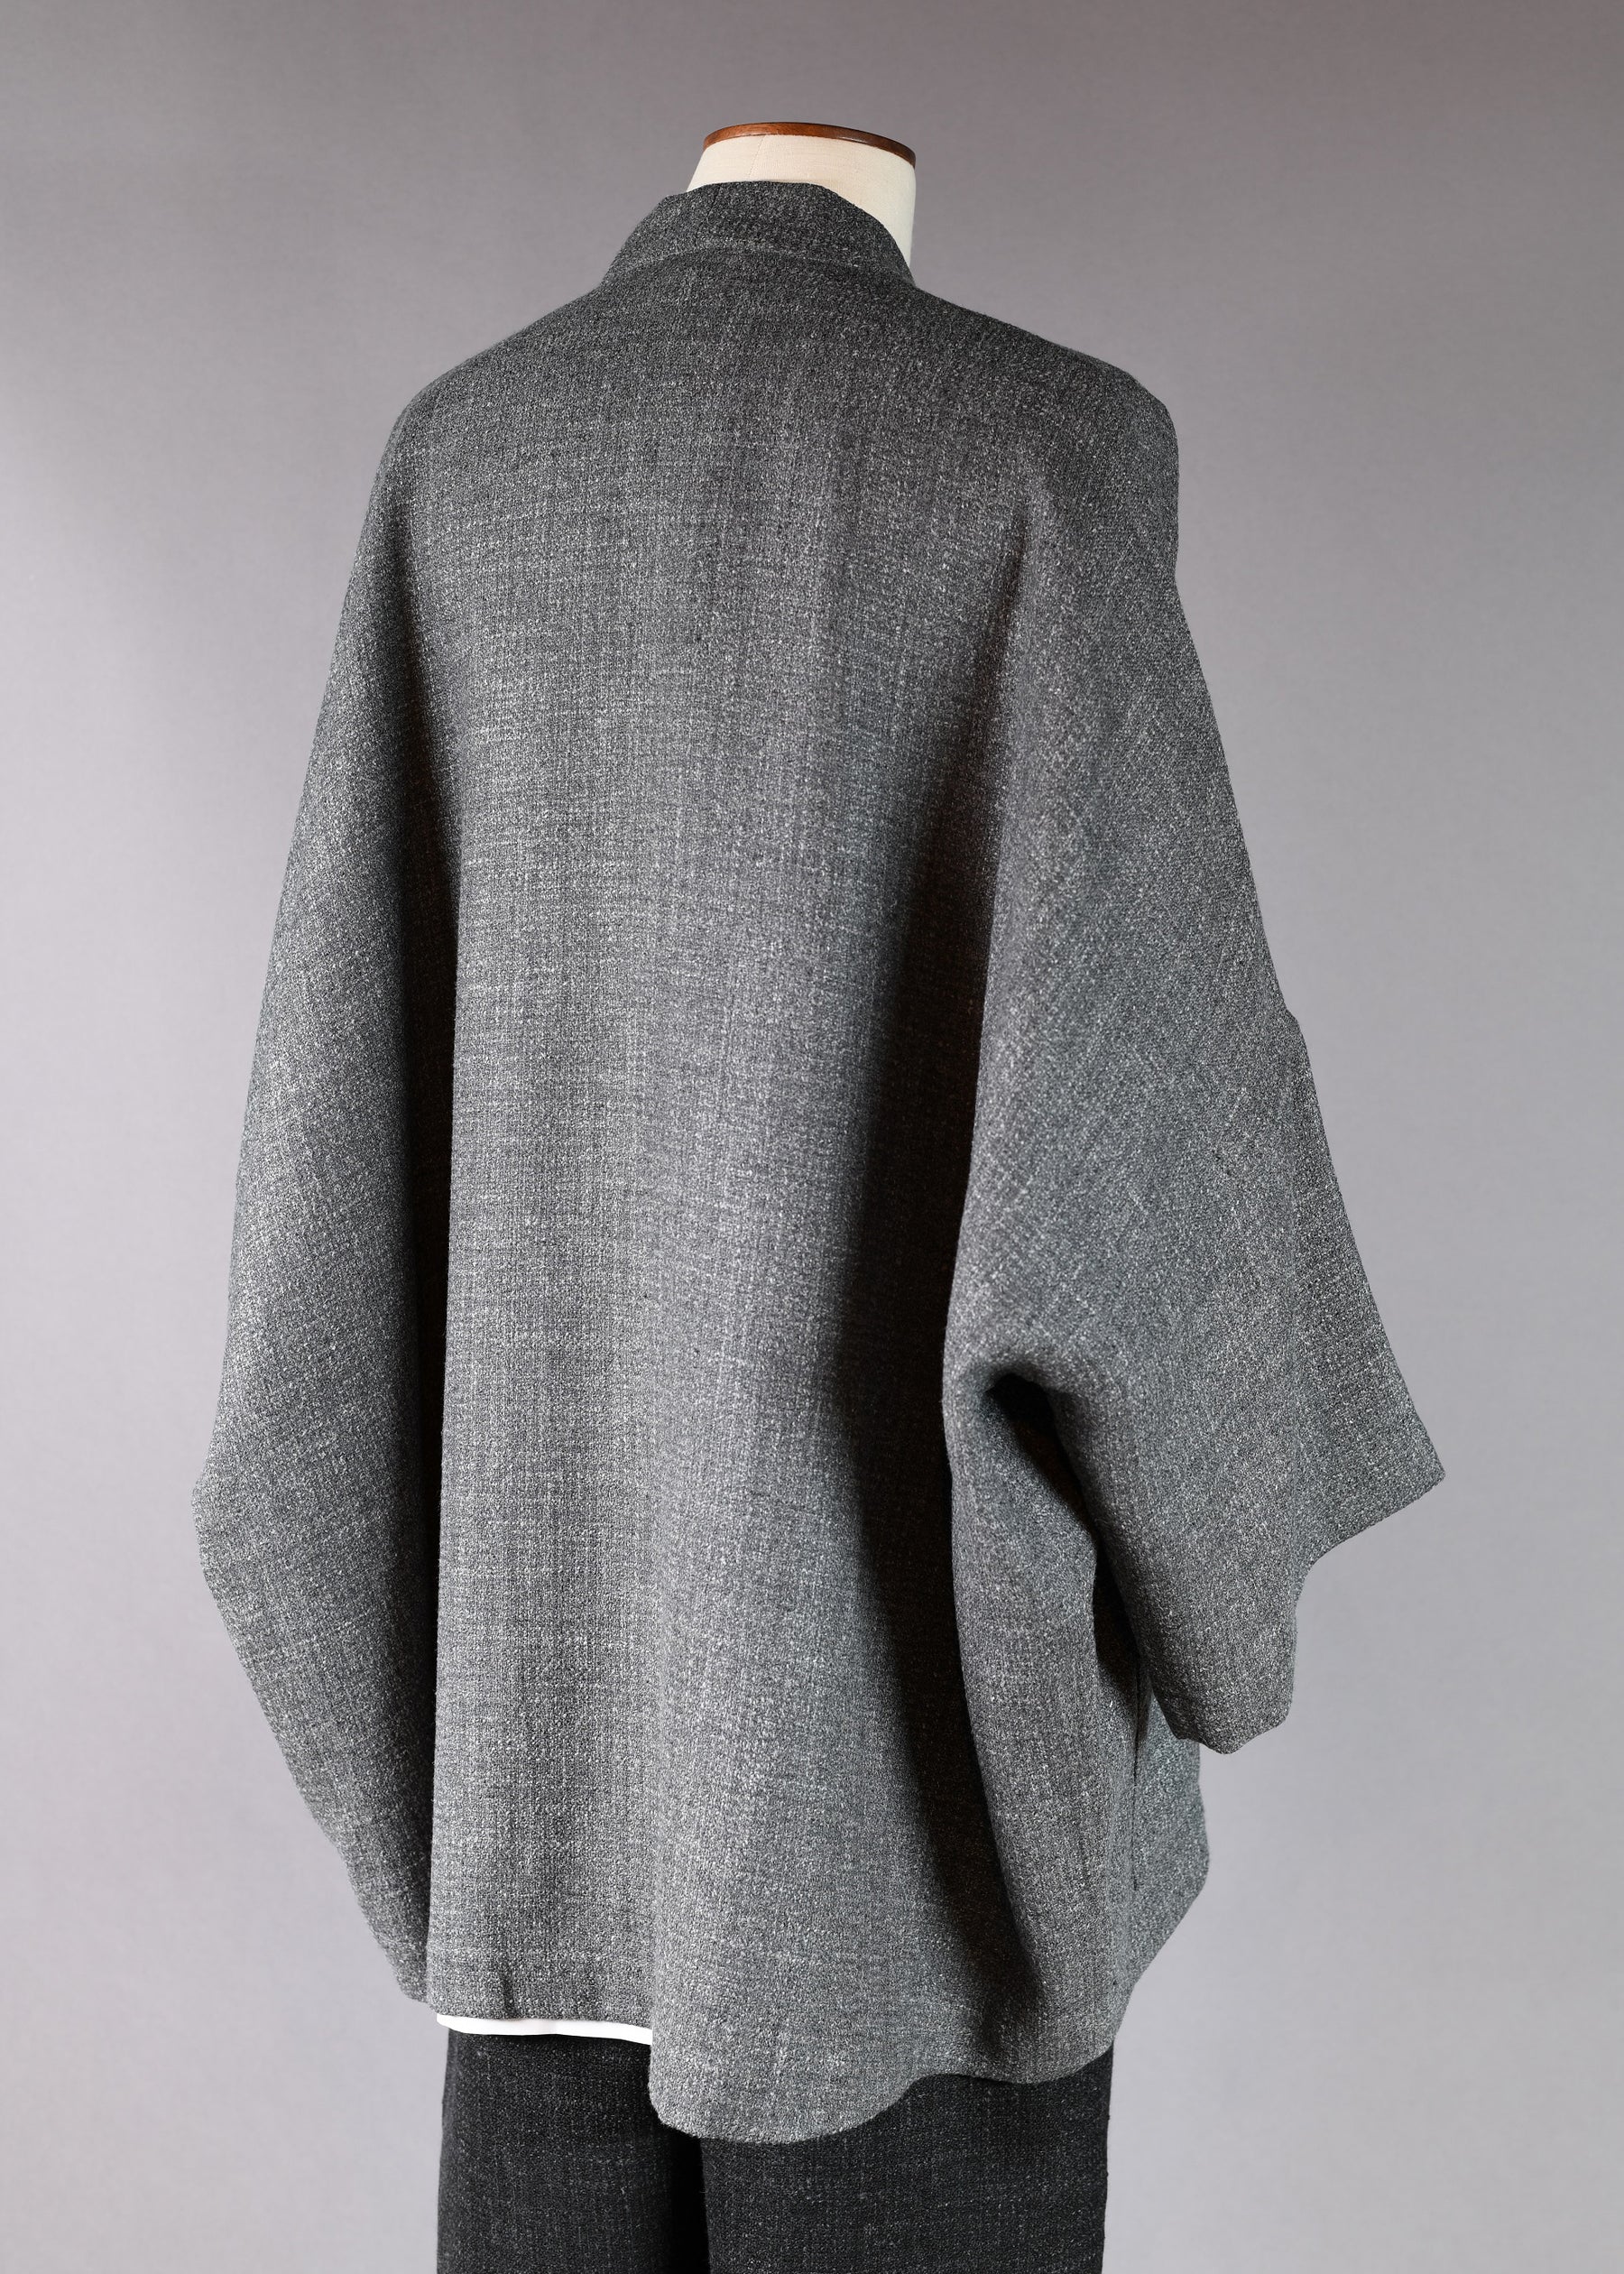 alpaca wool mix 3/4 sleeve sloped shoulder deep v-neck jacket - long